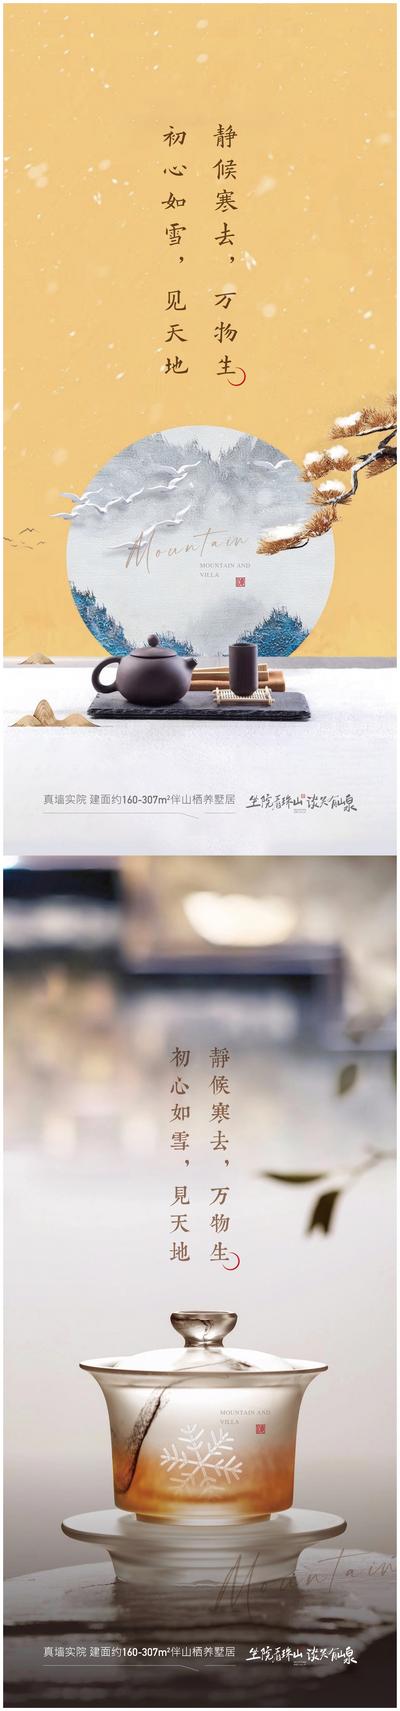 南门网 广告 海报 地产 小雪 节气 大雪 中式 文化 茶叶 系列 奢华 品质